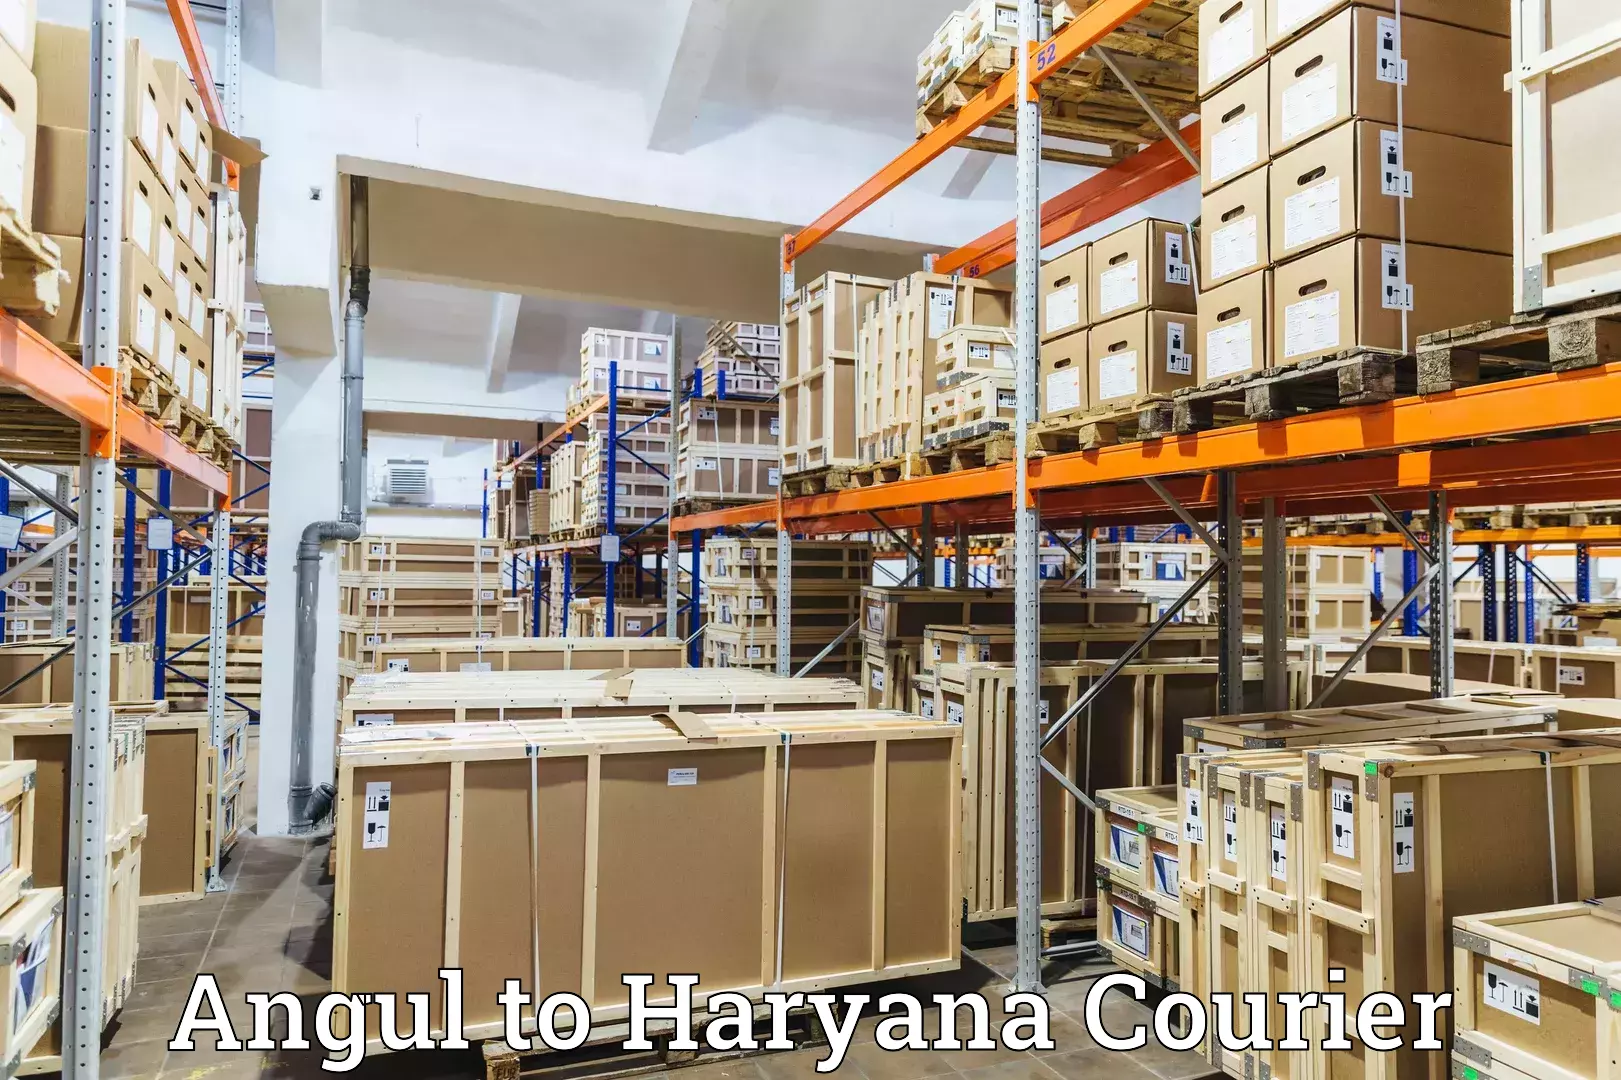 Lightweight parcel options Angul to Panchkula